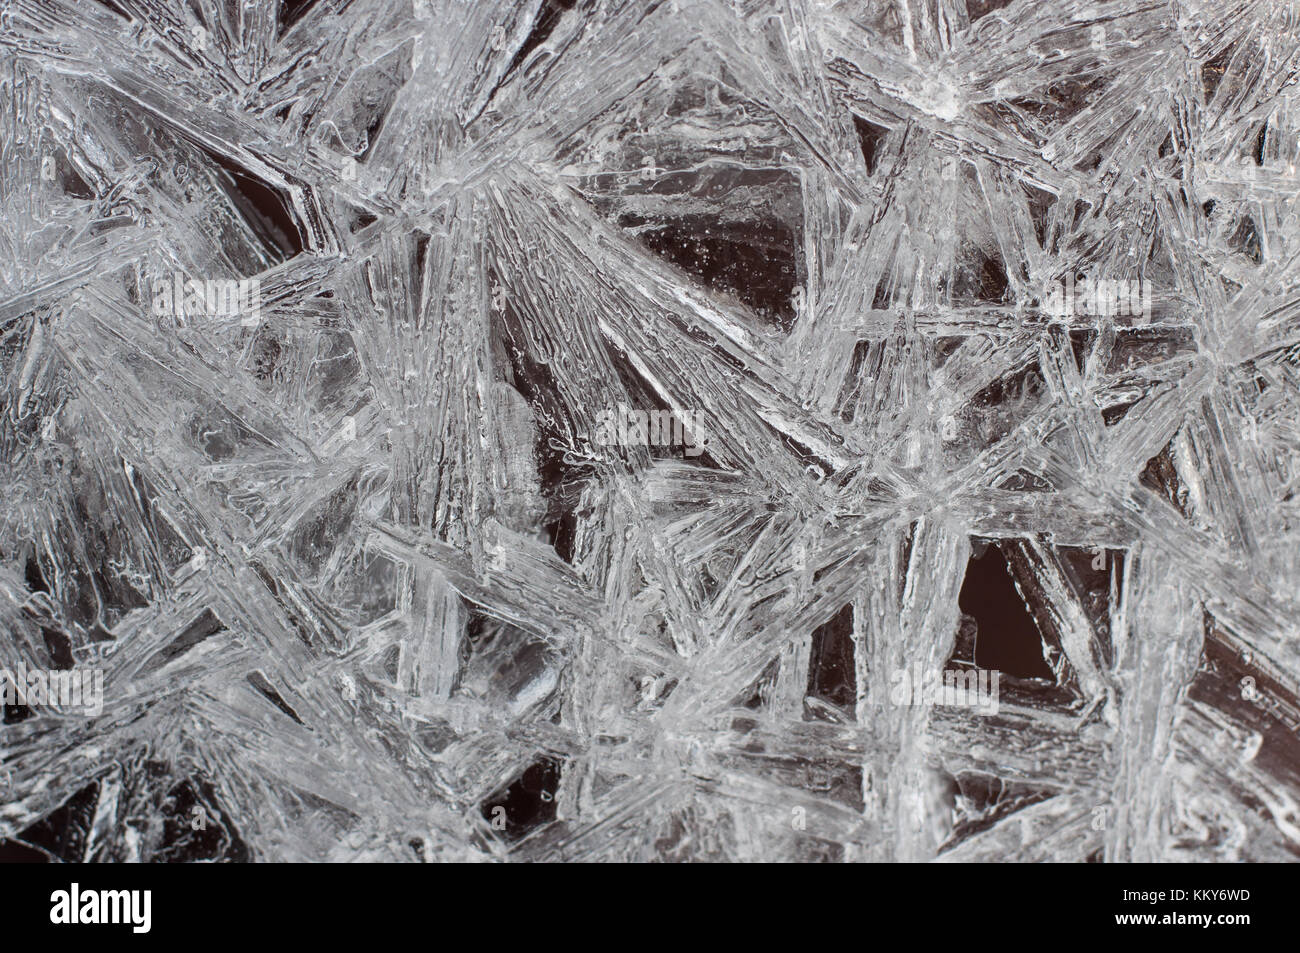 Naturellement formé des modèles dans une fine couche de glace--pur, amazing, de complexes. Banque D'Images